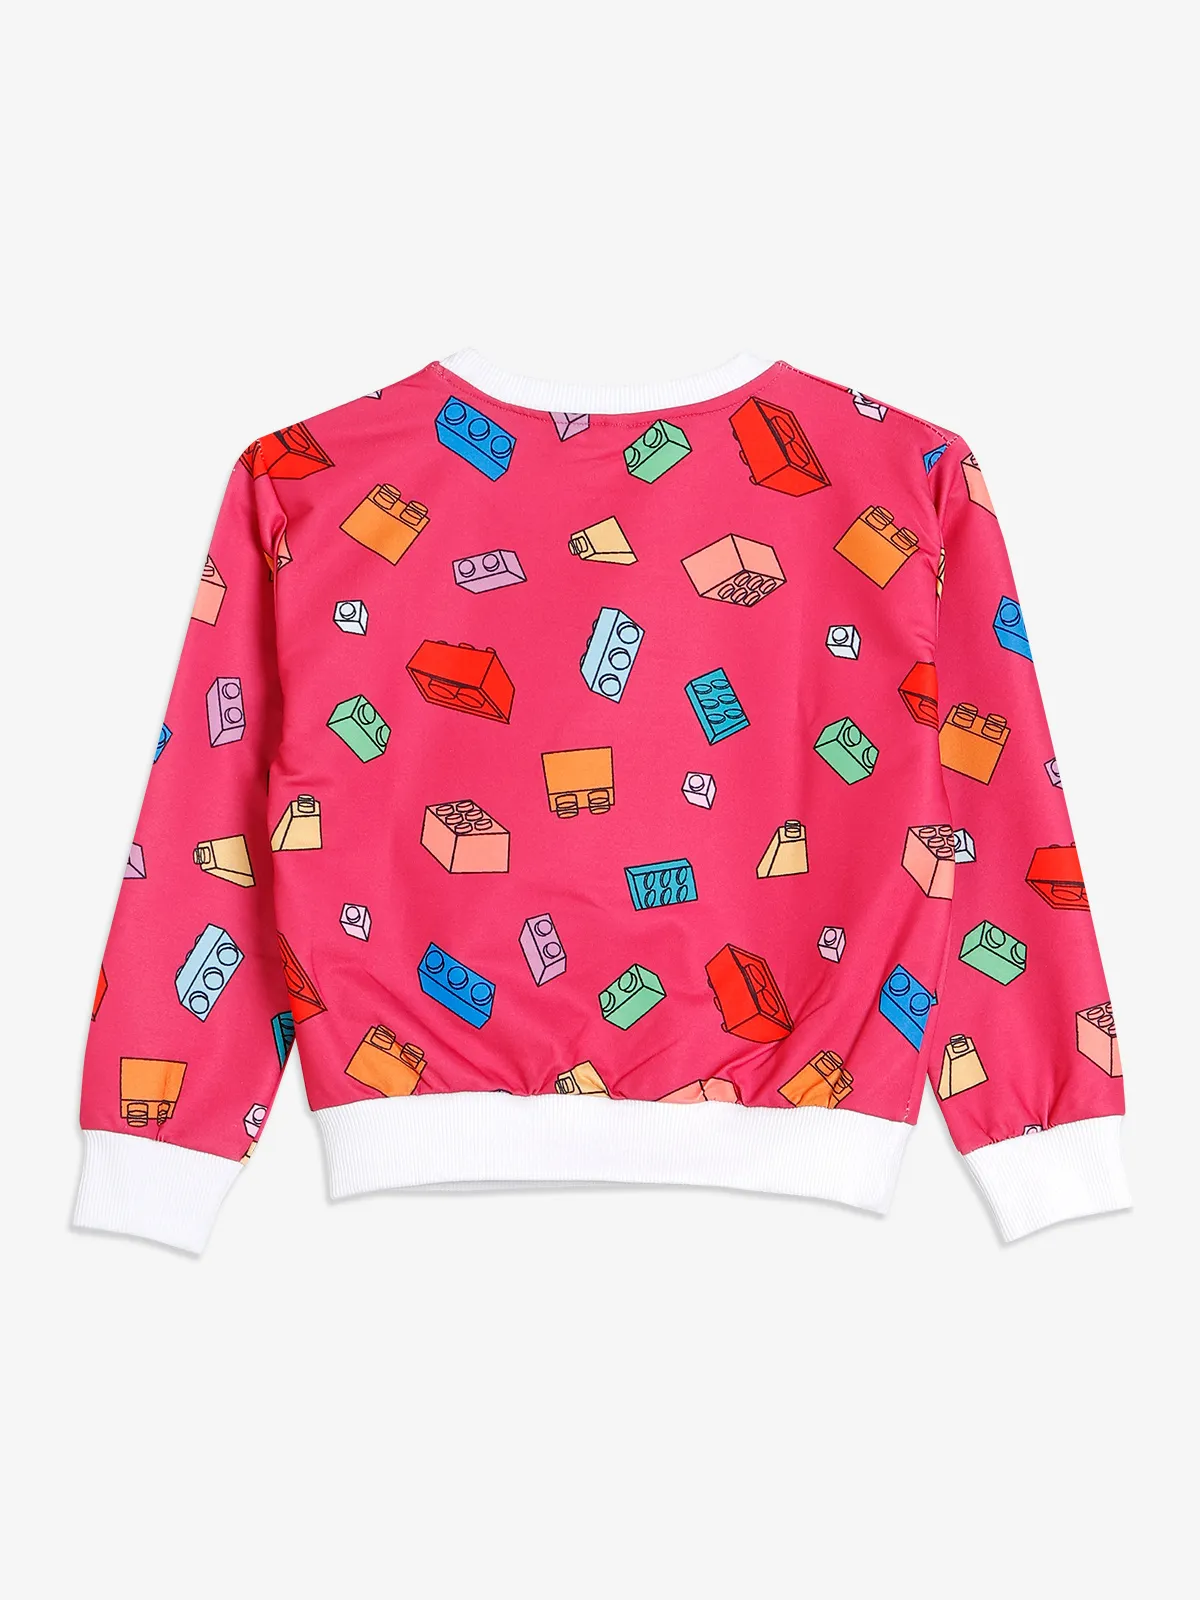 Bee&Honey pink printed sweatshirt